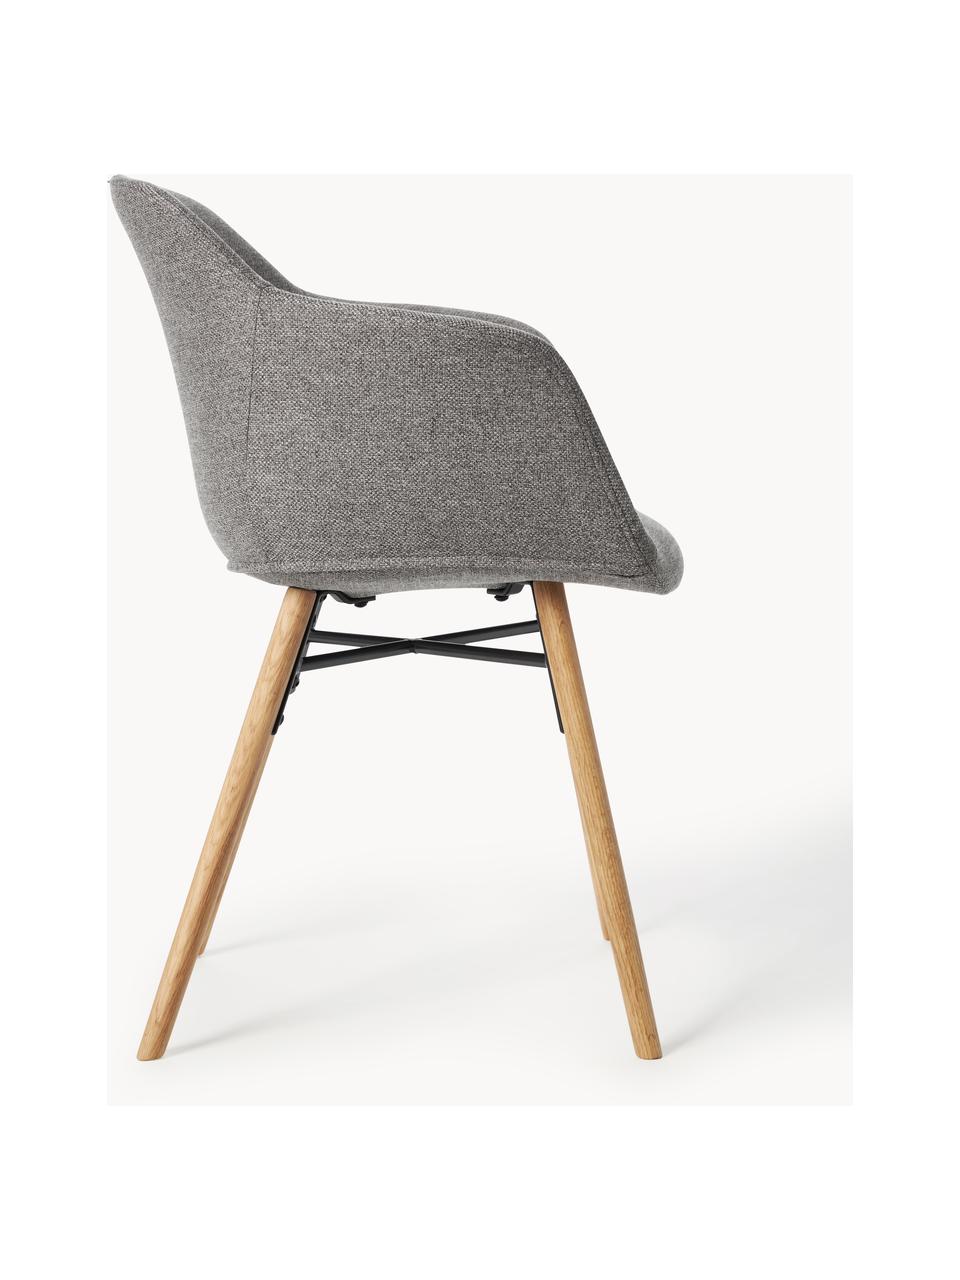 Chaise rembourrée avec assise étroite Fiji, Tissu gris foncé, bois de chêne, larg. 59 x prof. 55 cm